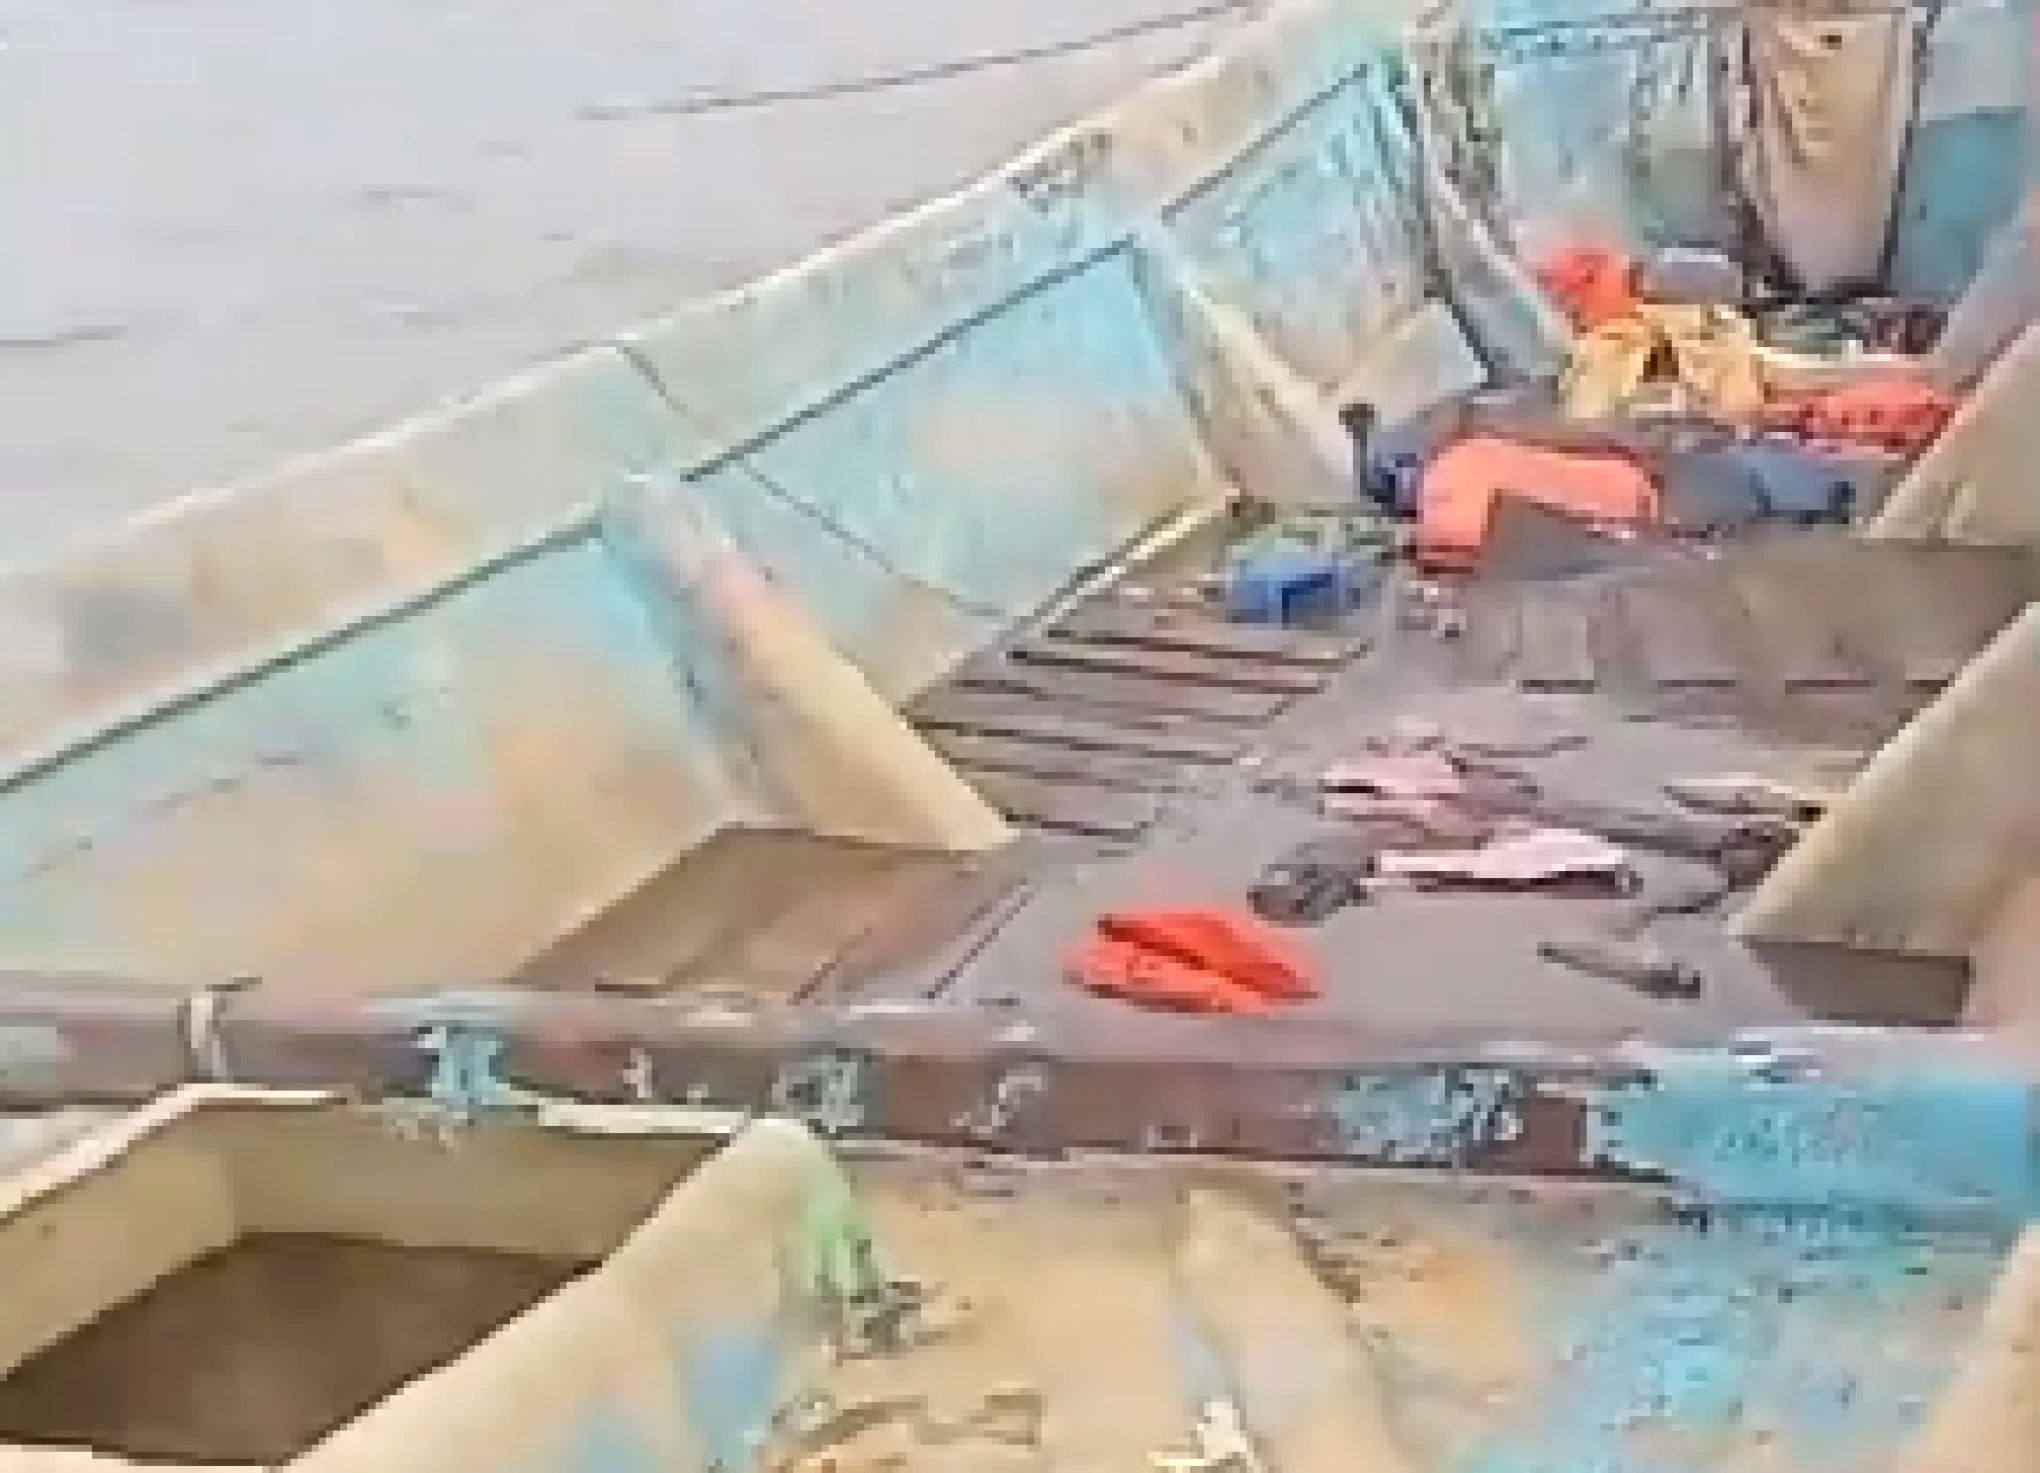 O que se sabe sobre os corpos encontrados em embarcação no Pará?